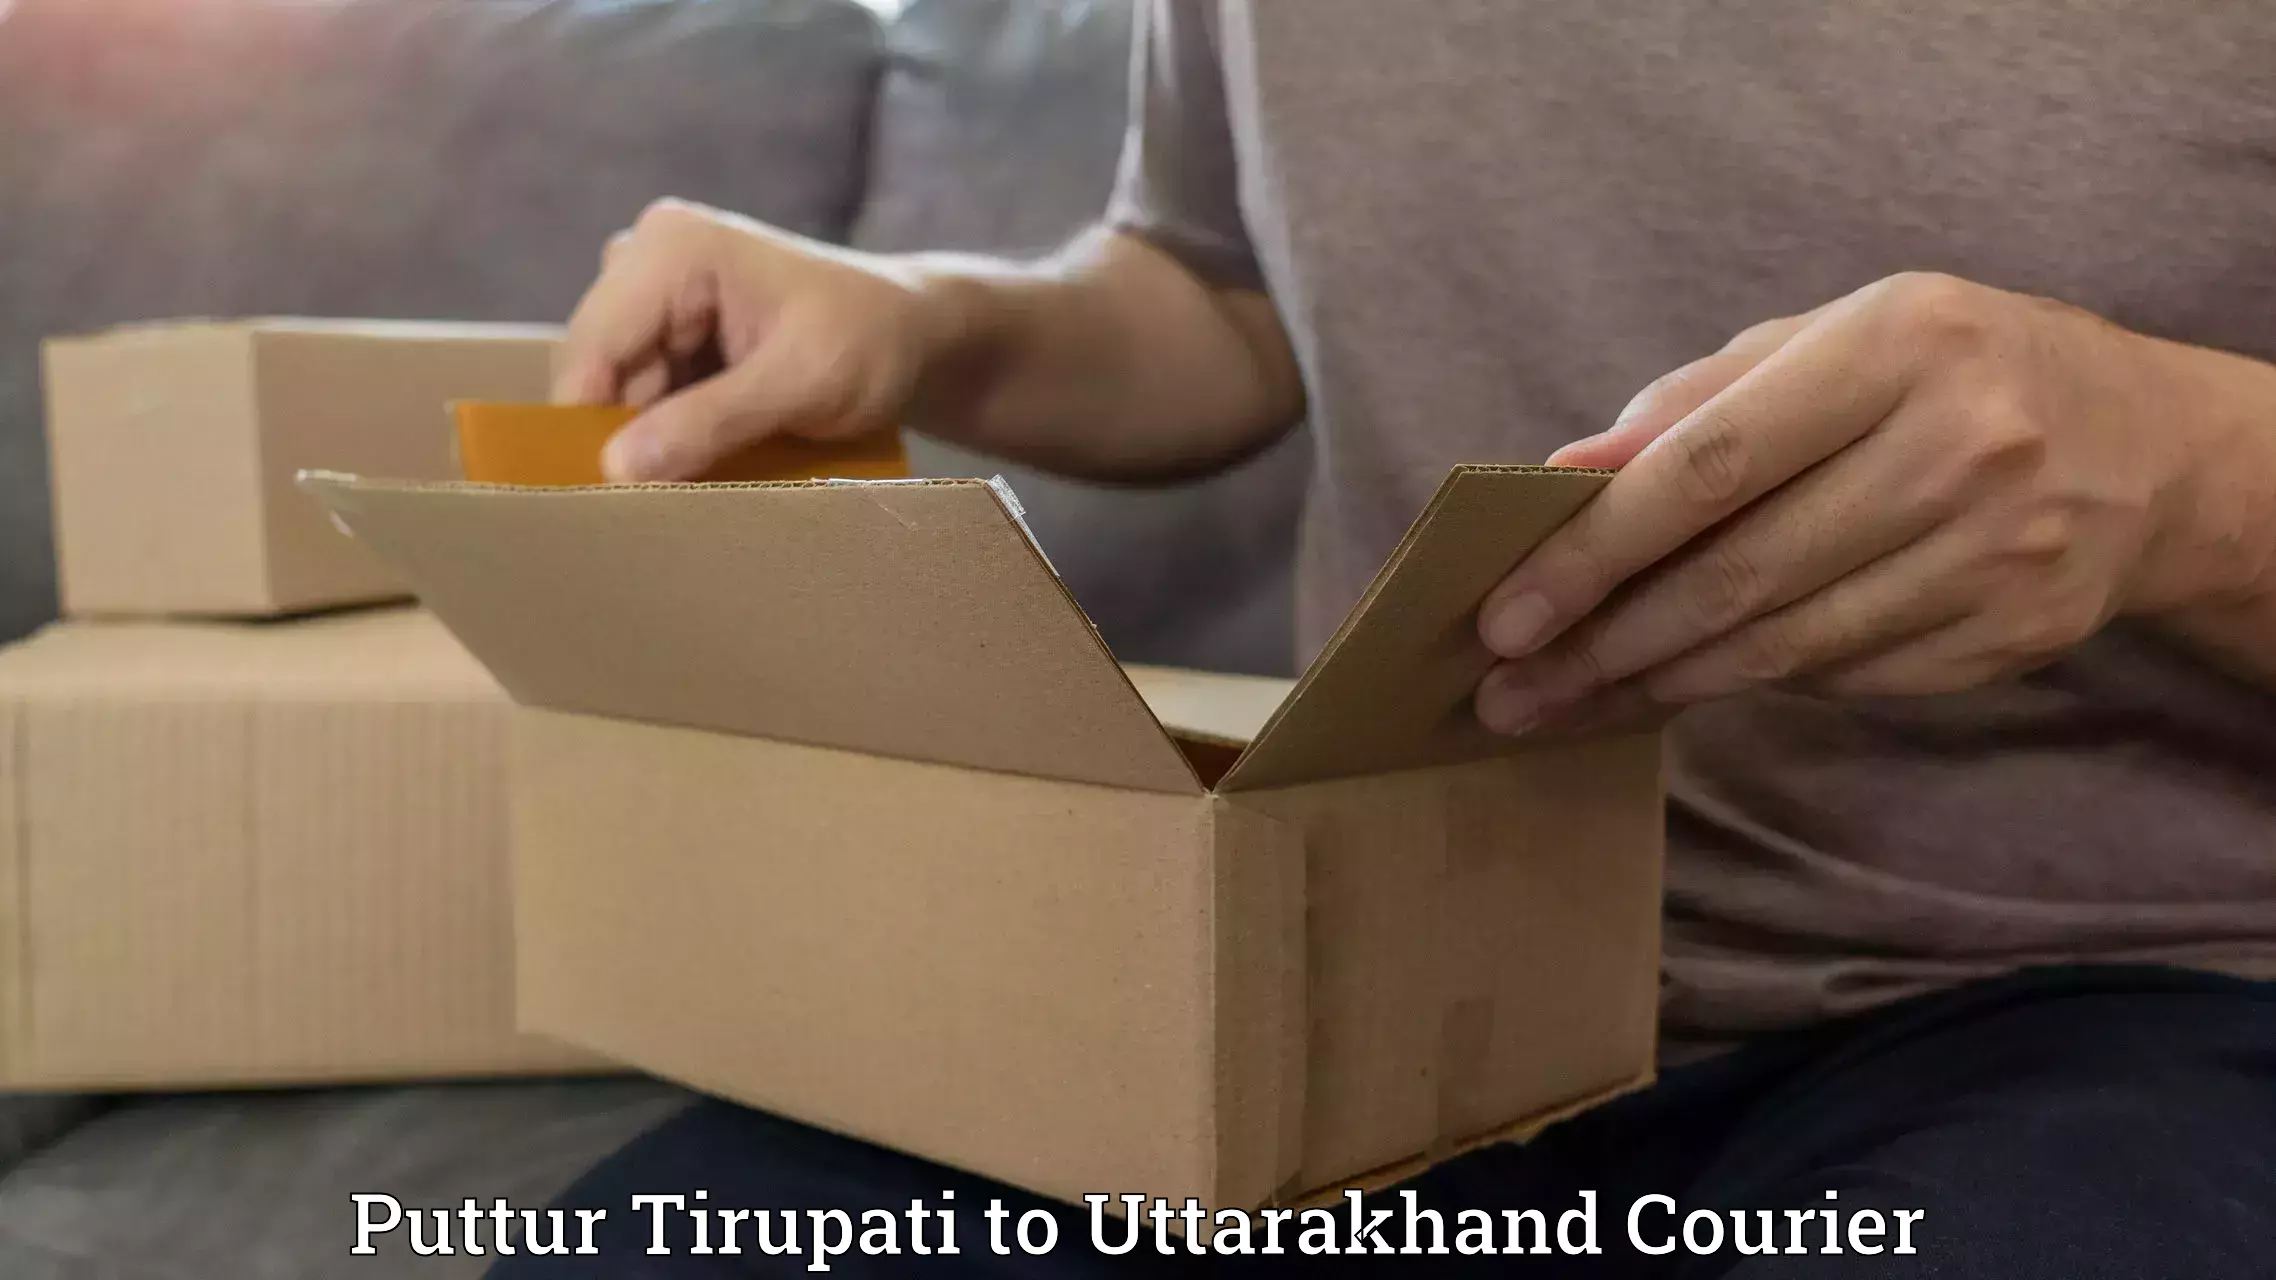 Efficient parcel service Puttur Tirupati to Khatima